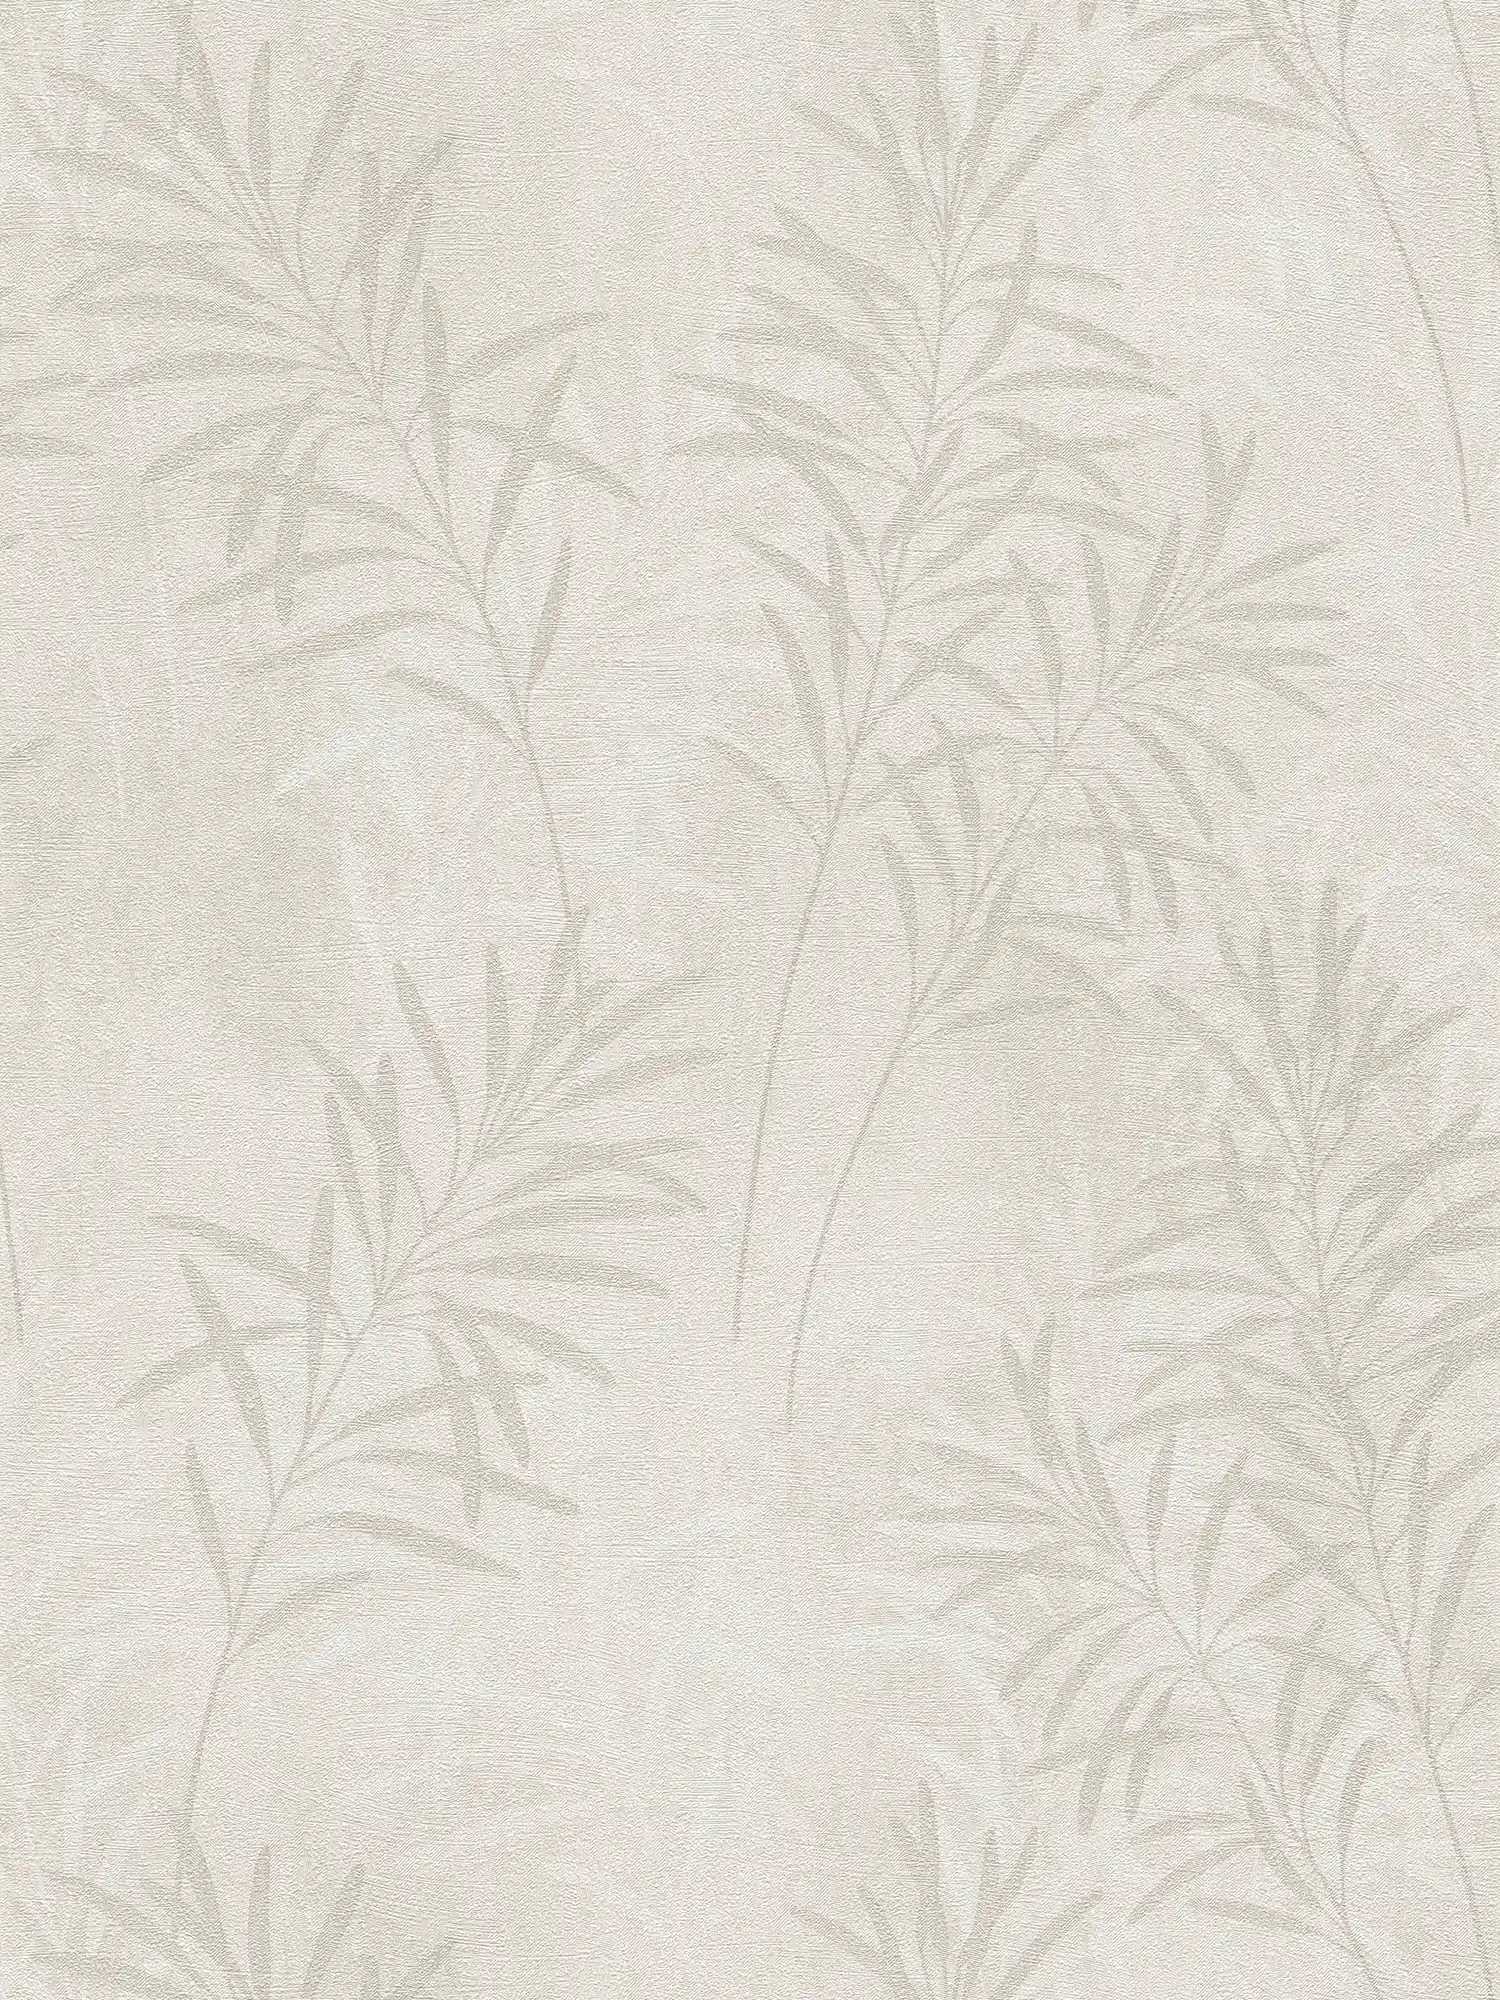         Scandinavisch vliesbehang met bloemengrassen - crème, beige, metallic
    